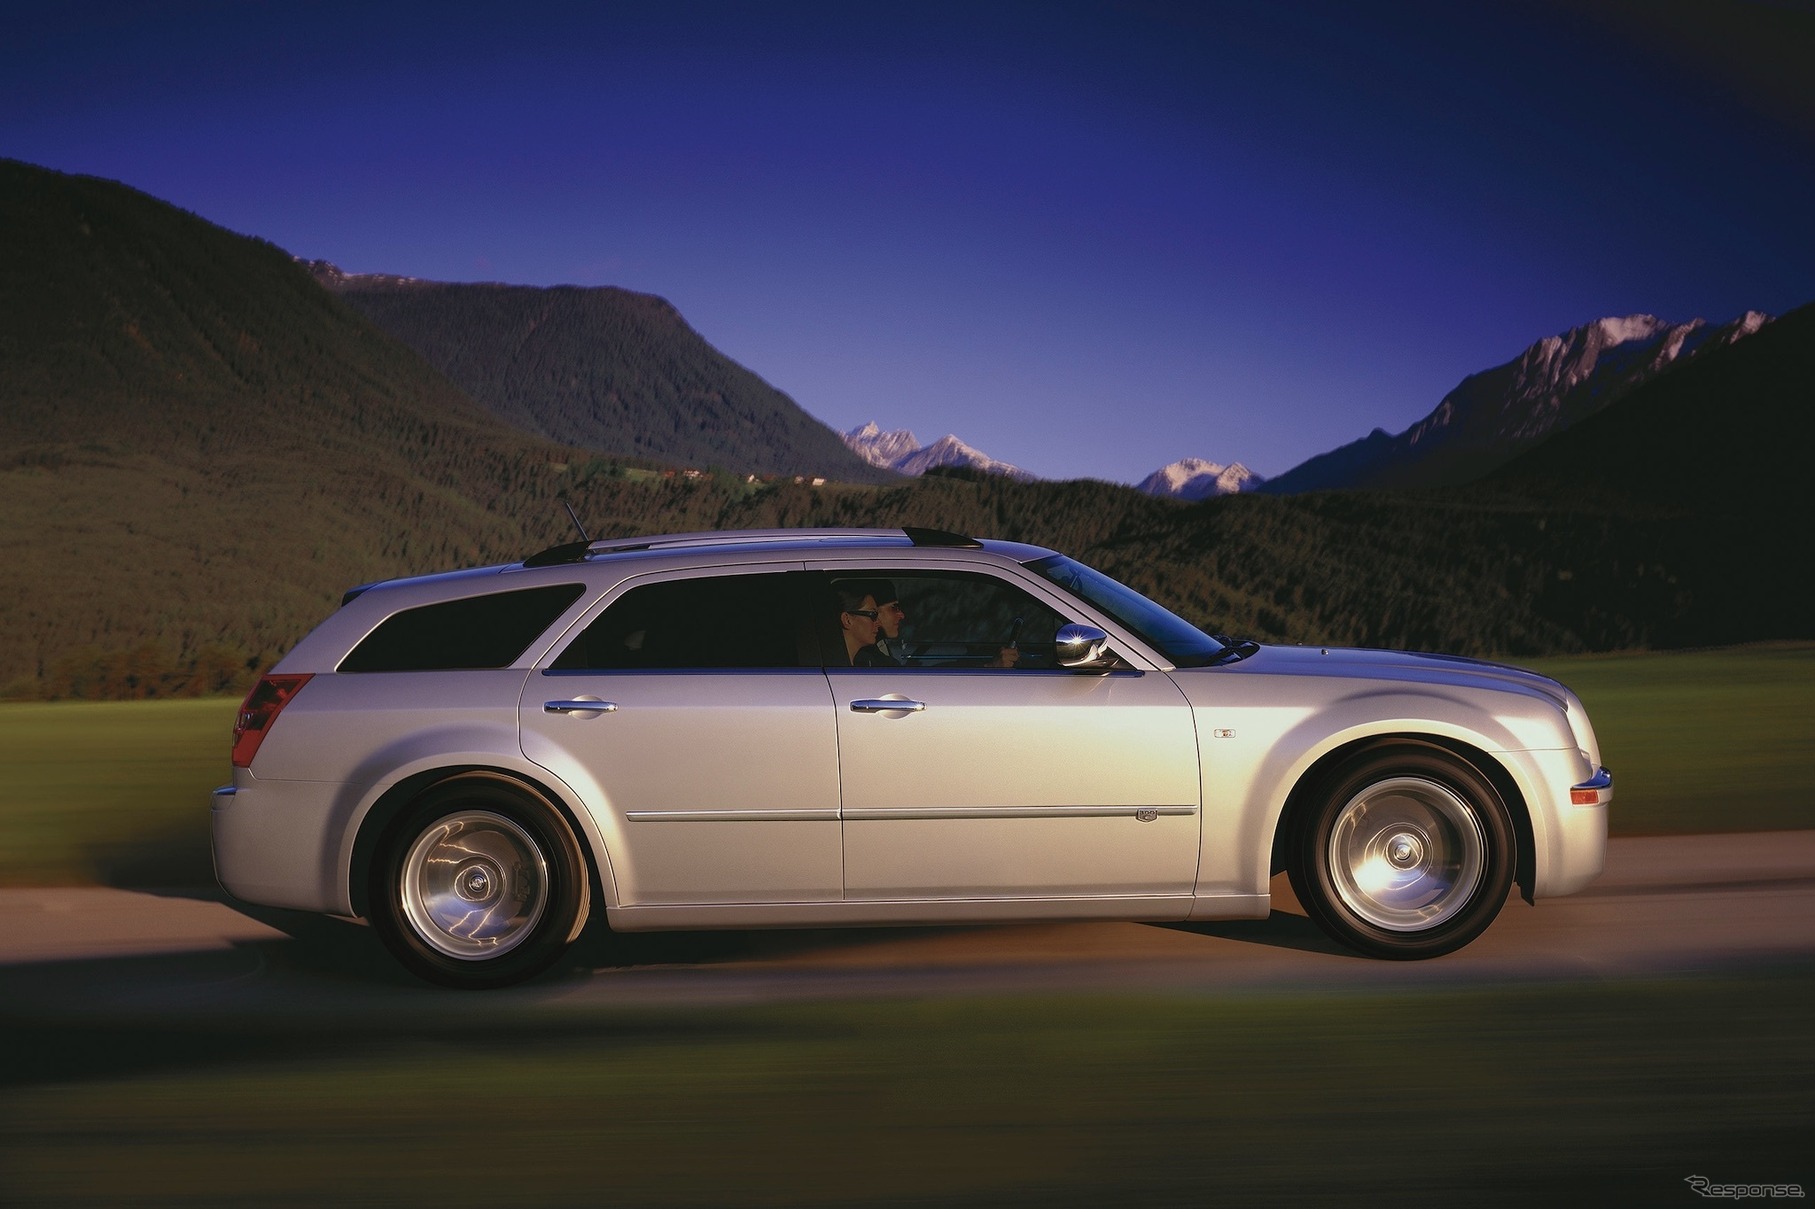 Chrysler 300C Touring SRT8